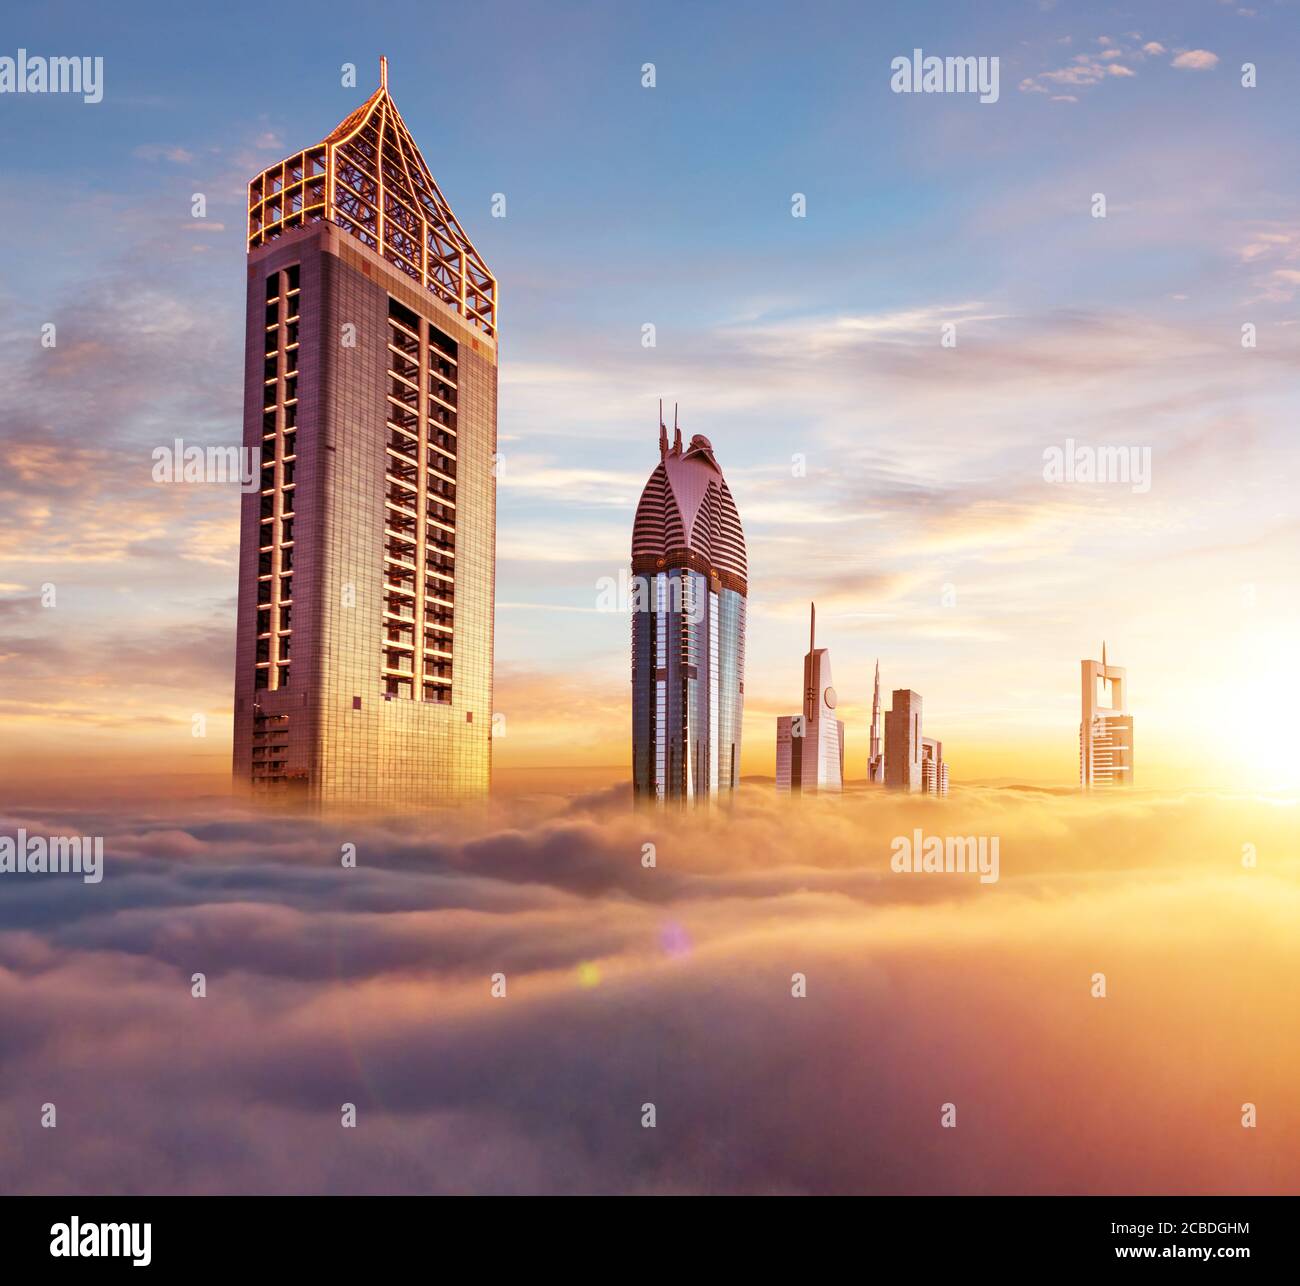 Dubaï coucher de soleil vue panoramique sur le centre-ville couvert de nuages. Dubaï est une ville super moderne des Émirats arabes Unis, mégalopole cosmopolite. Image très haute résolution Banque D'Images